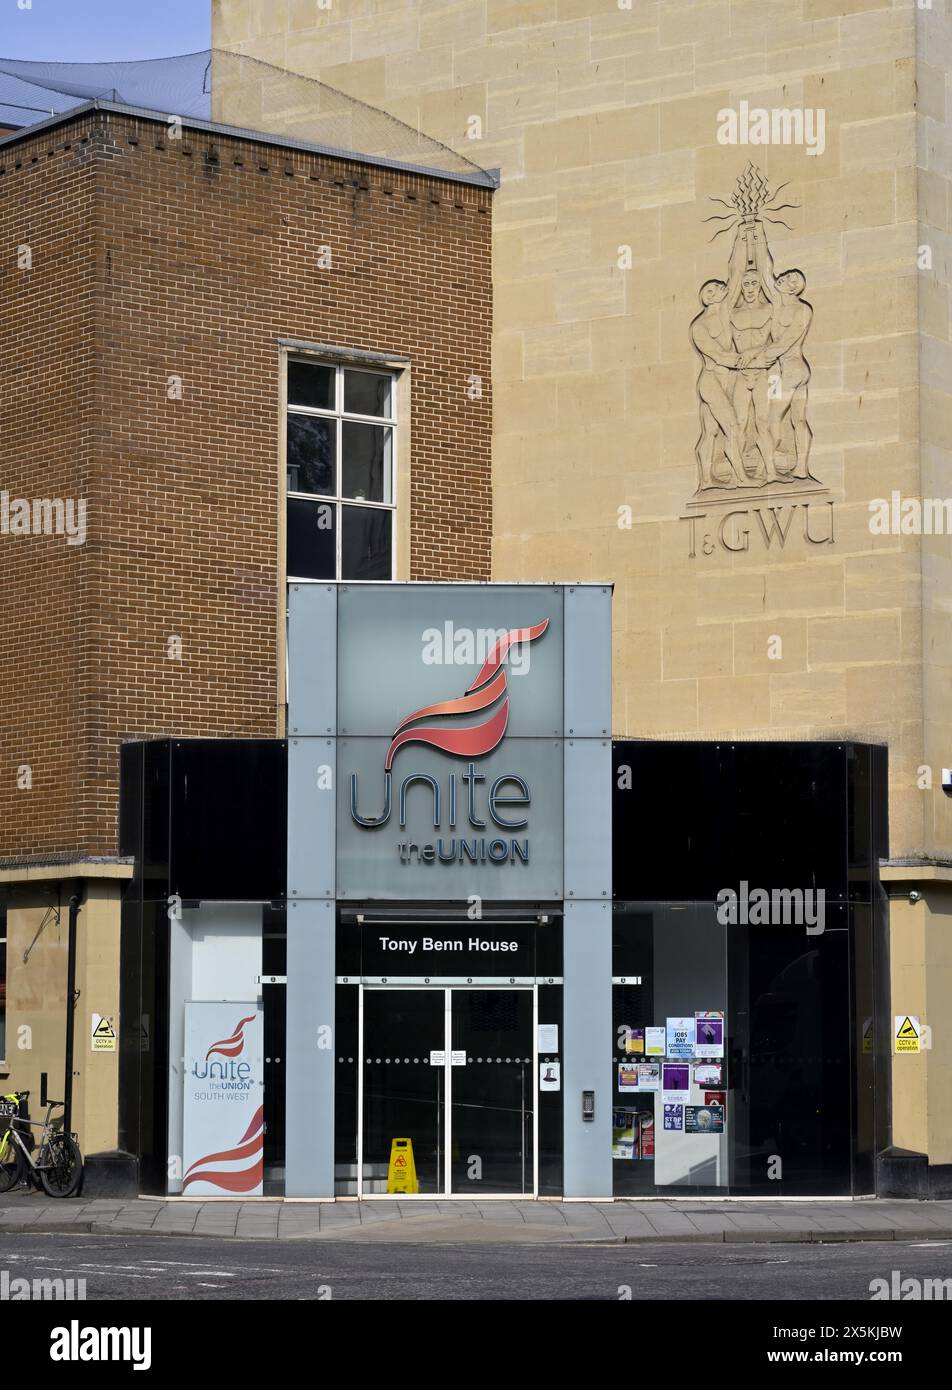 Unire il quartier generale locale dell'Unione, Tony Benn House Bristol con l'edificio T&GWU union Foto Stock